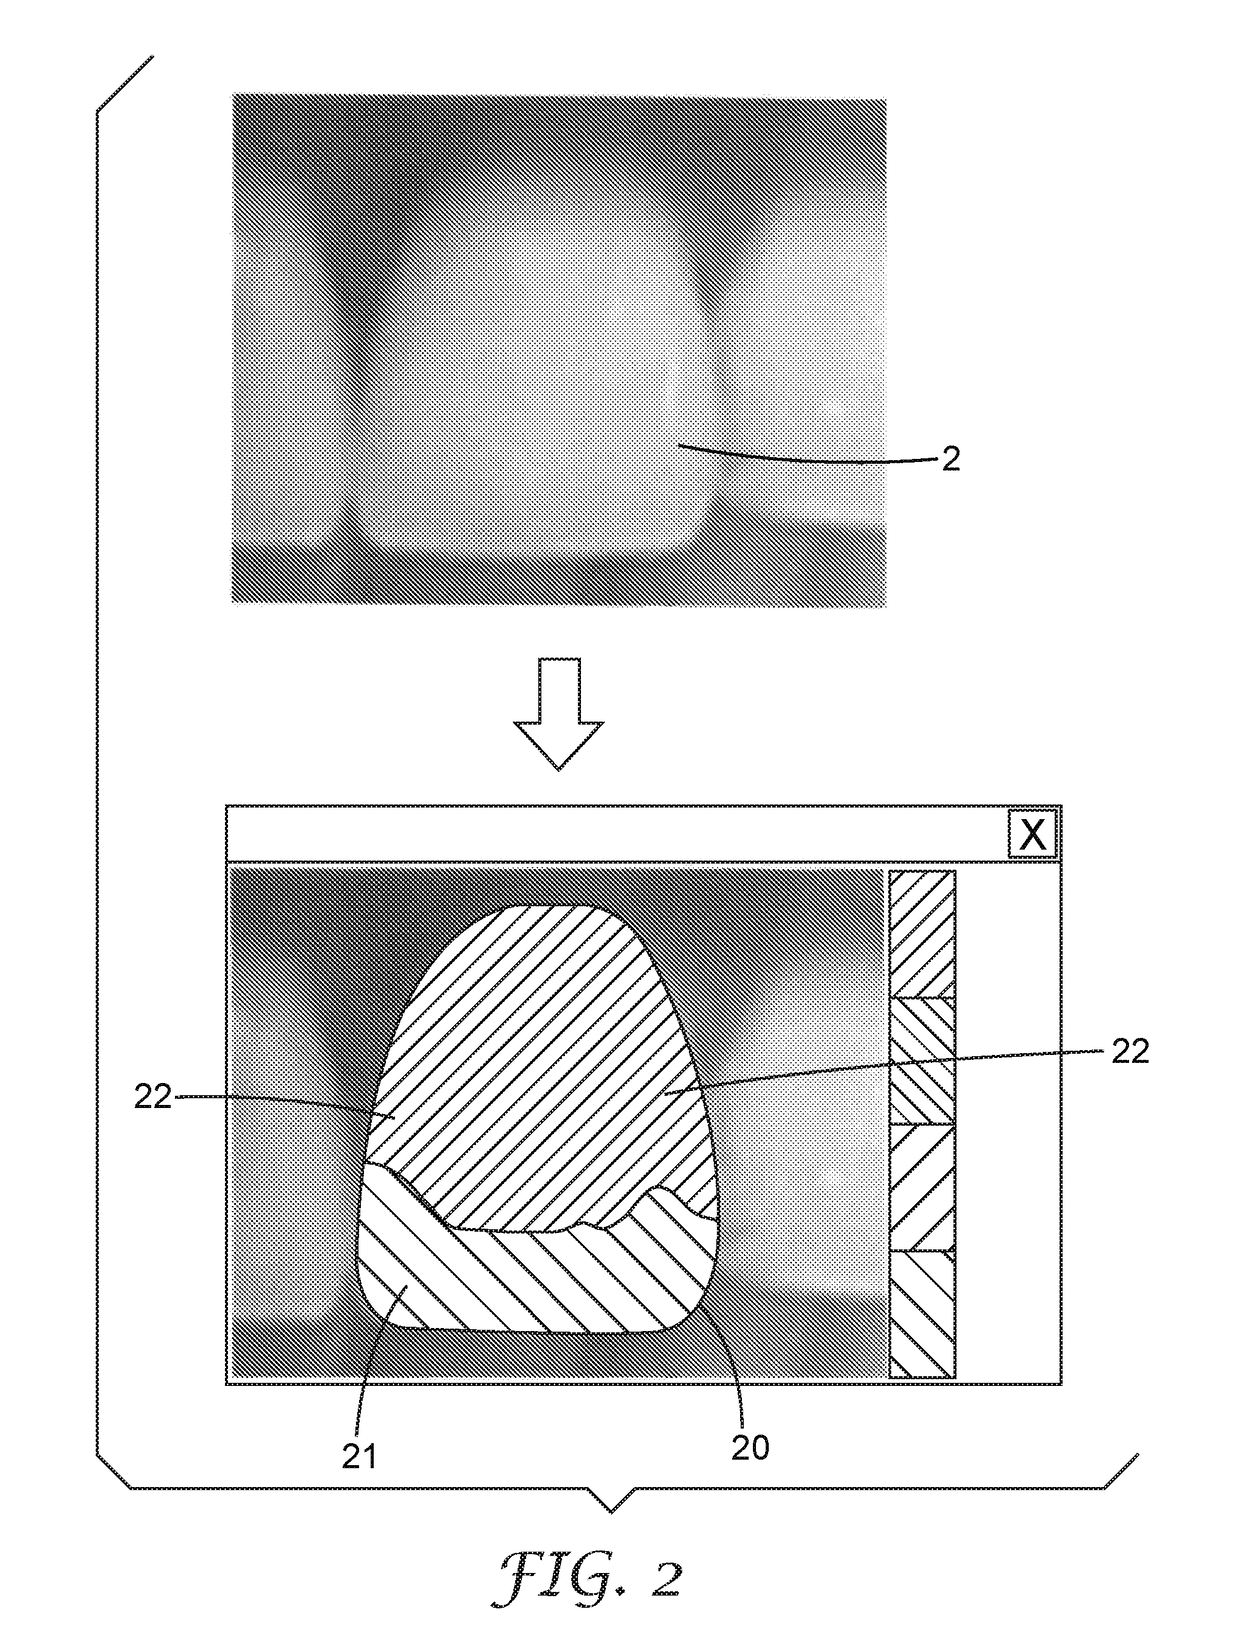 A method of making a dental restoration